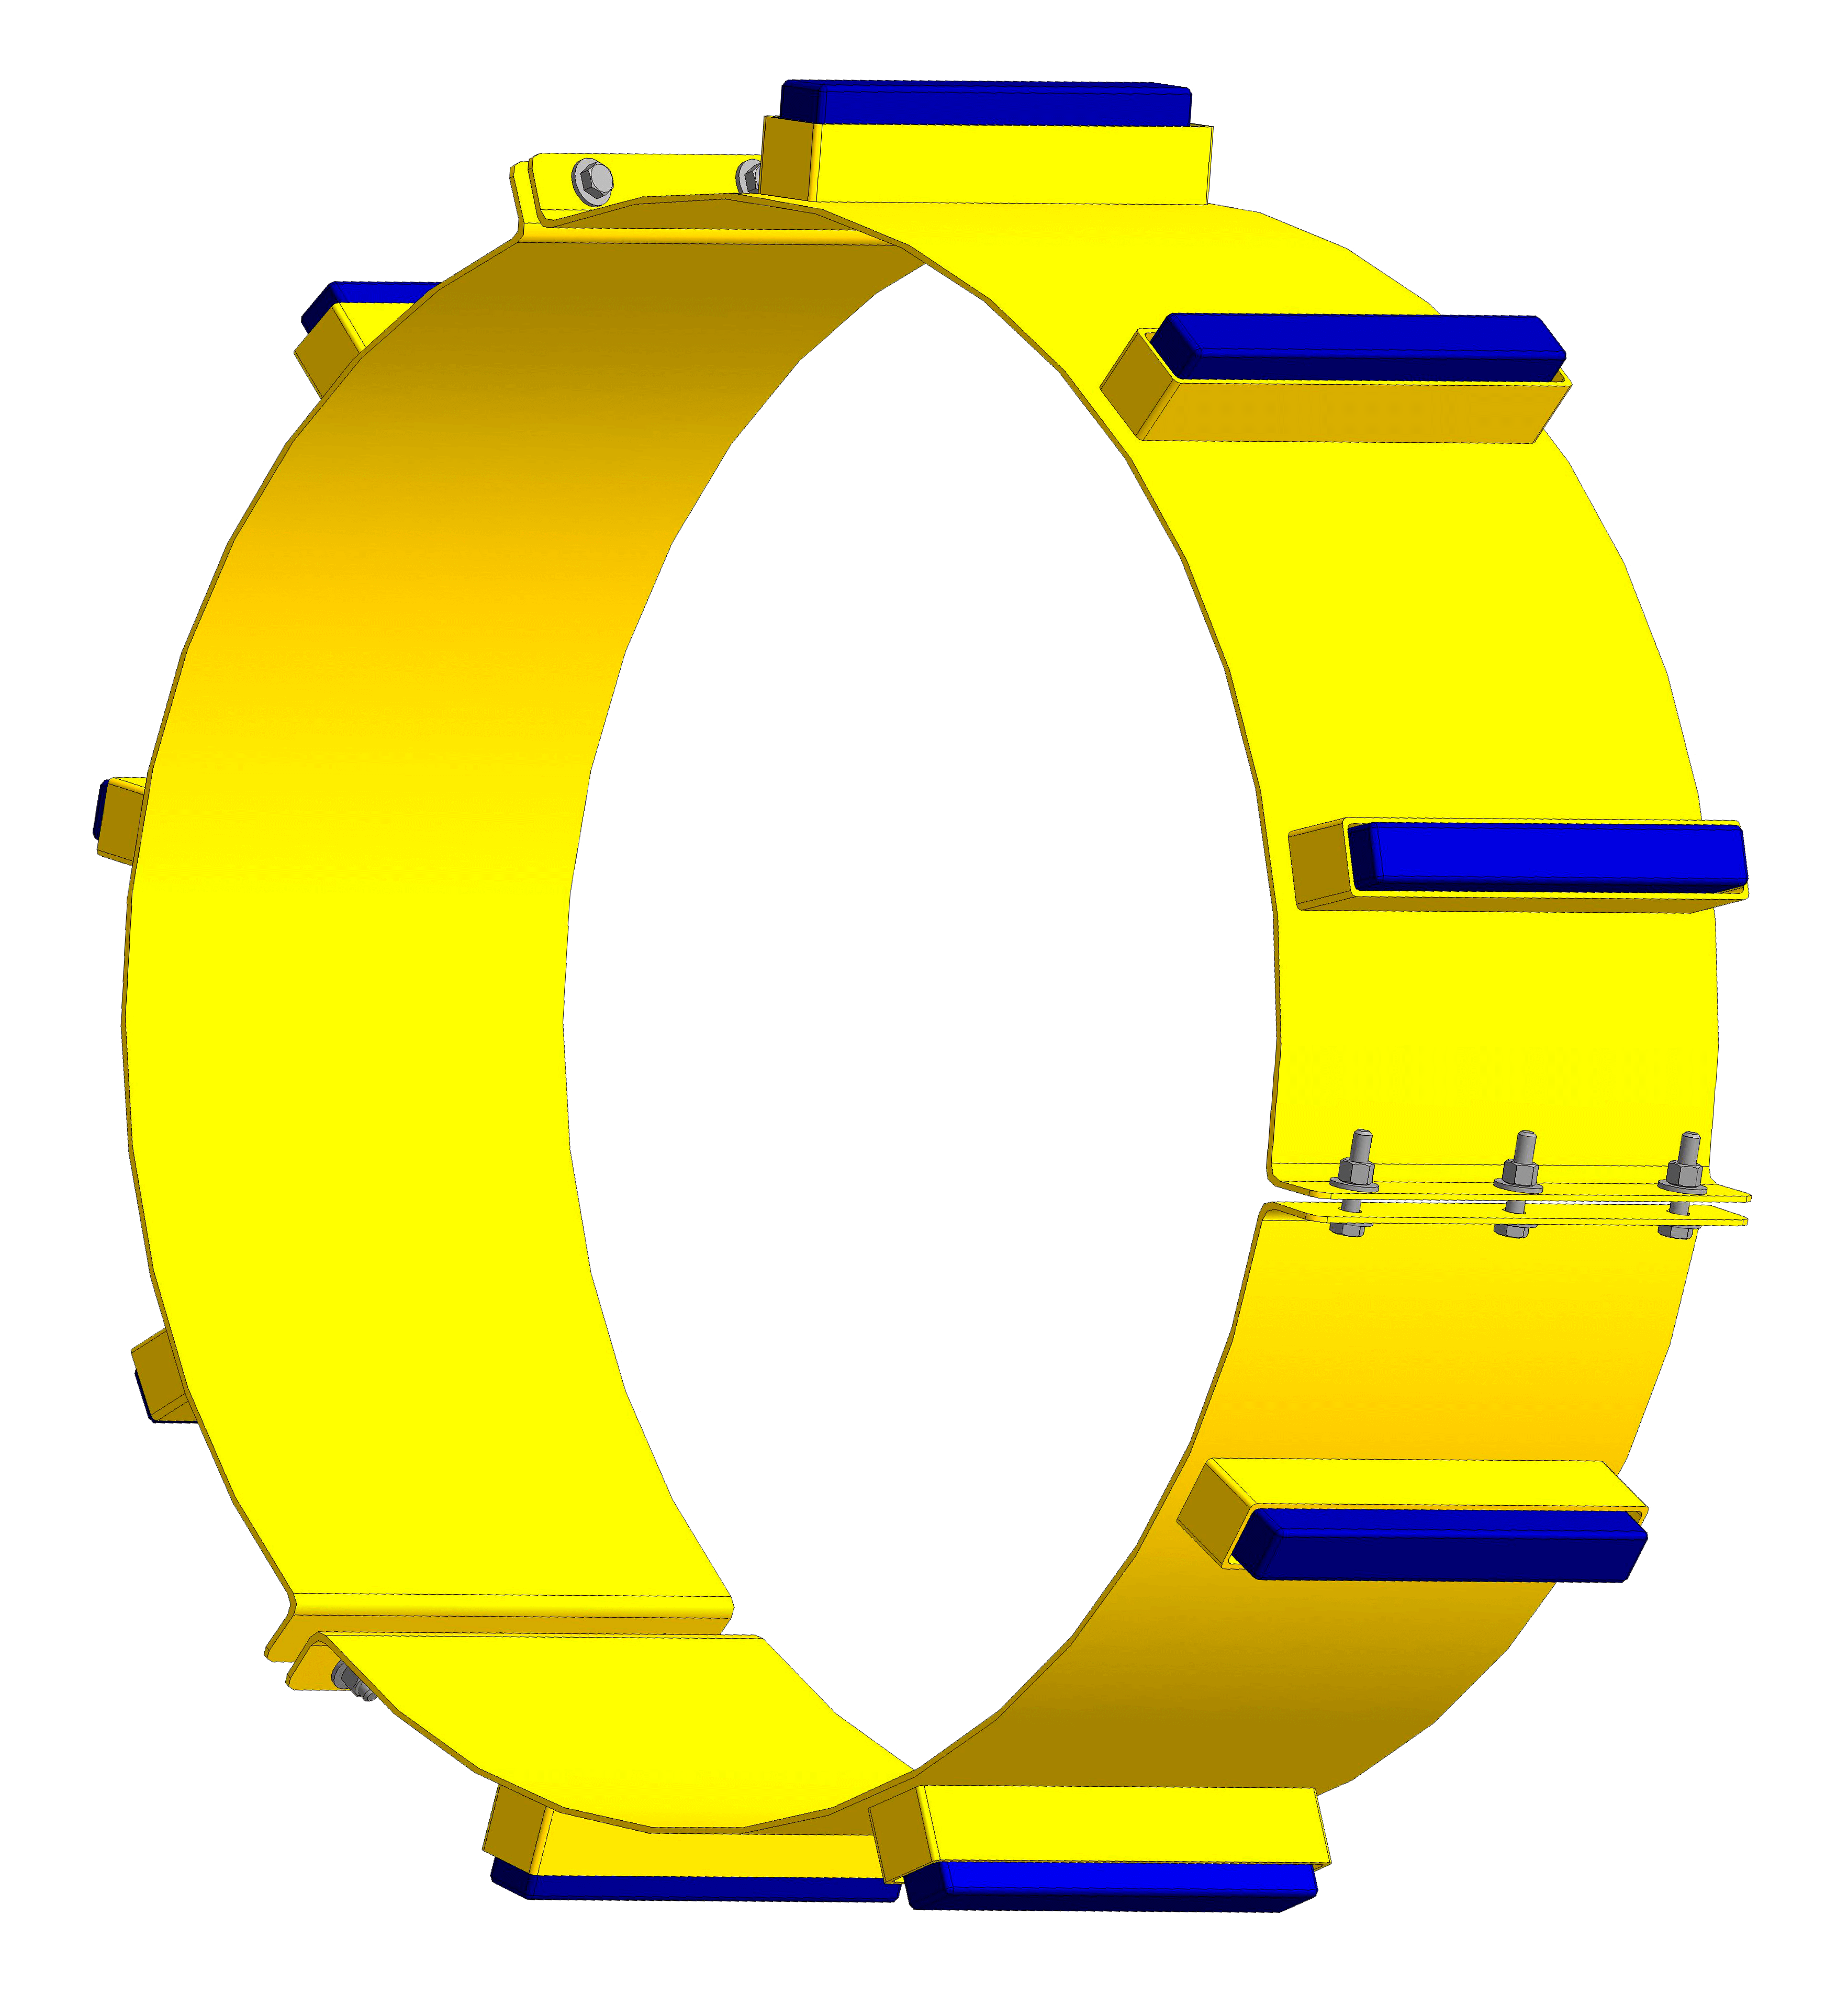 ОНК - опорно-направляющие кольца